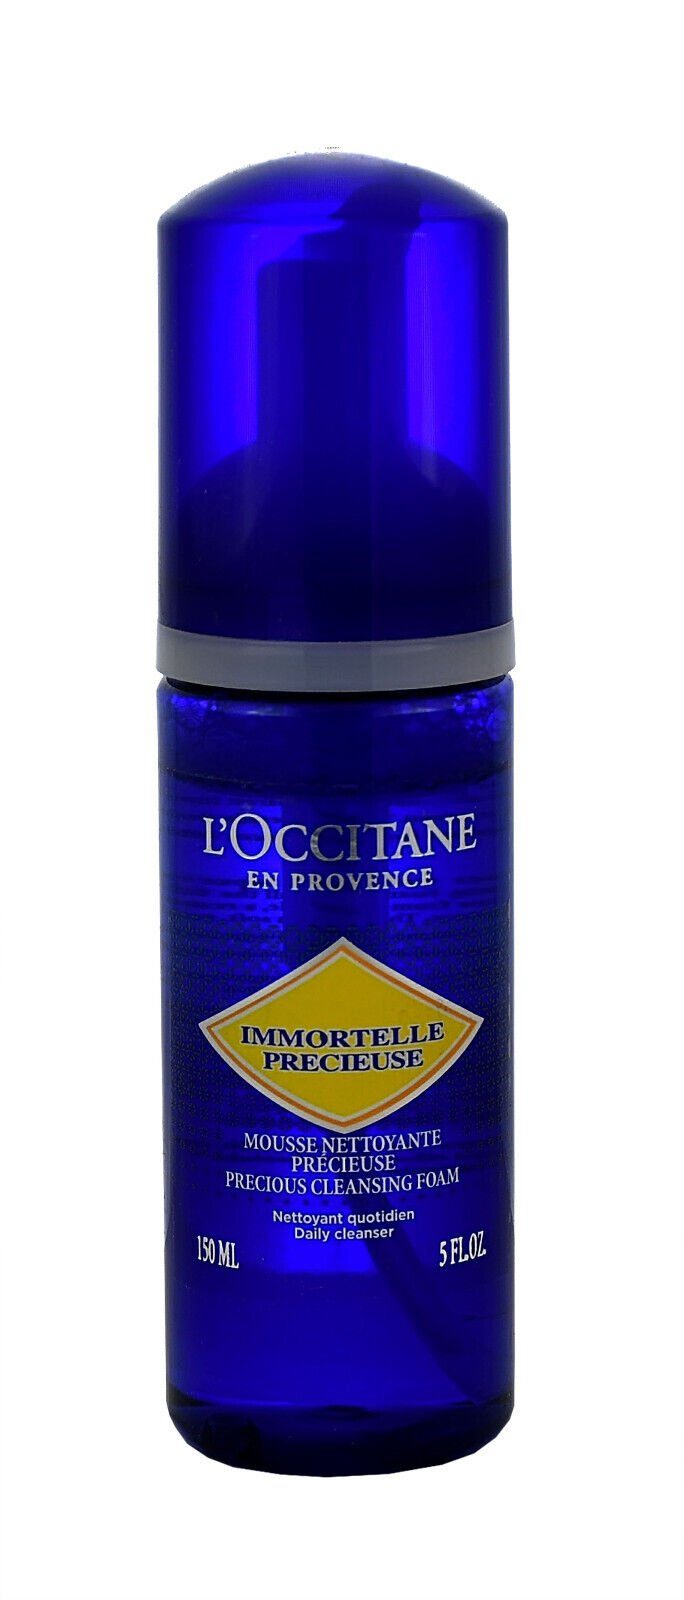 Immortelle 150ml L'OCCITANE Mousse L'occitane Gesichts-Reinigungsschaum Précieuse Nettoyante